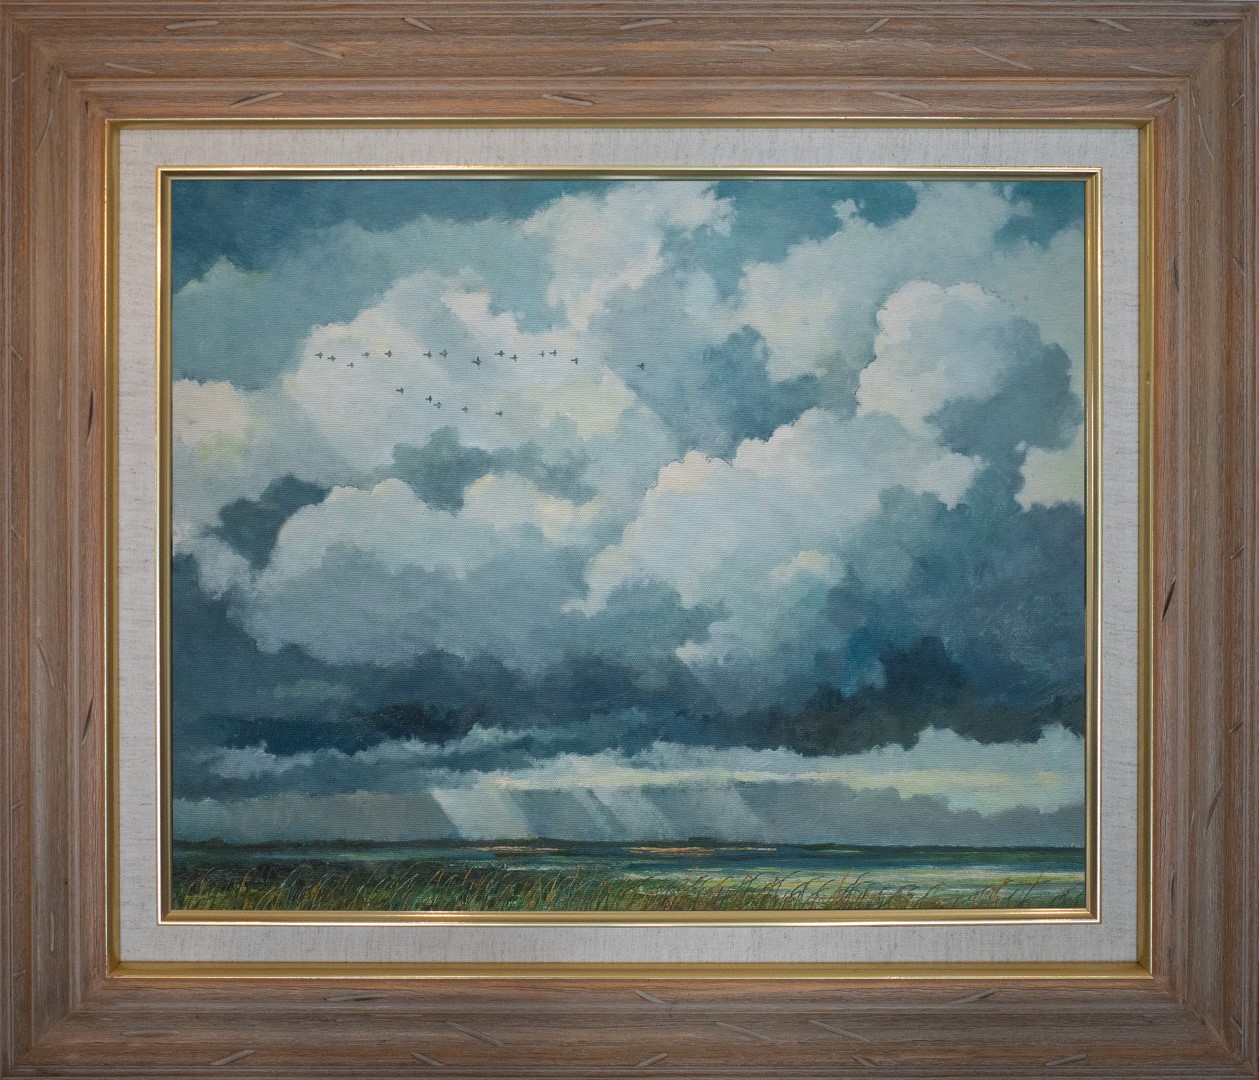 Eric Sloane Painting Title: Marshland Scene